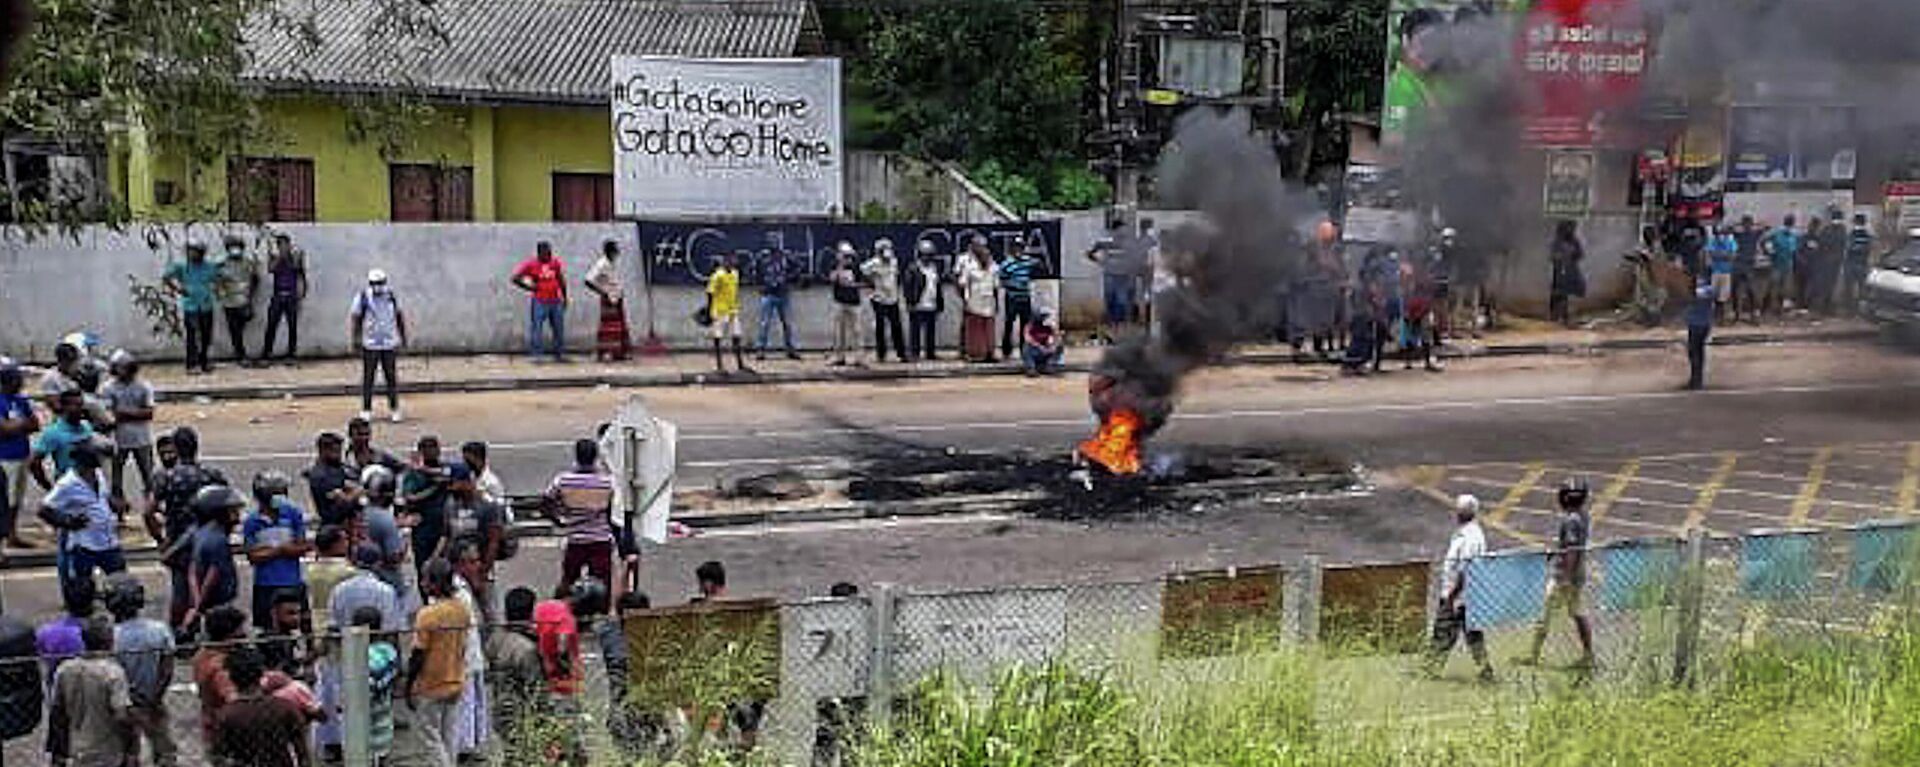 Протестующие блокируют дорогу в Рамбуккане, Шри-Ланка - Sputnik International, 1920, 09.05.2022